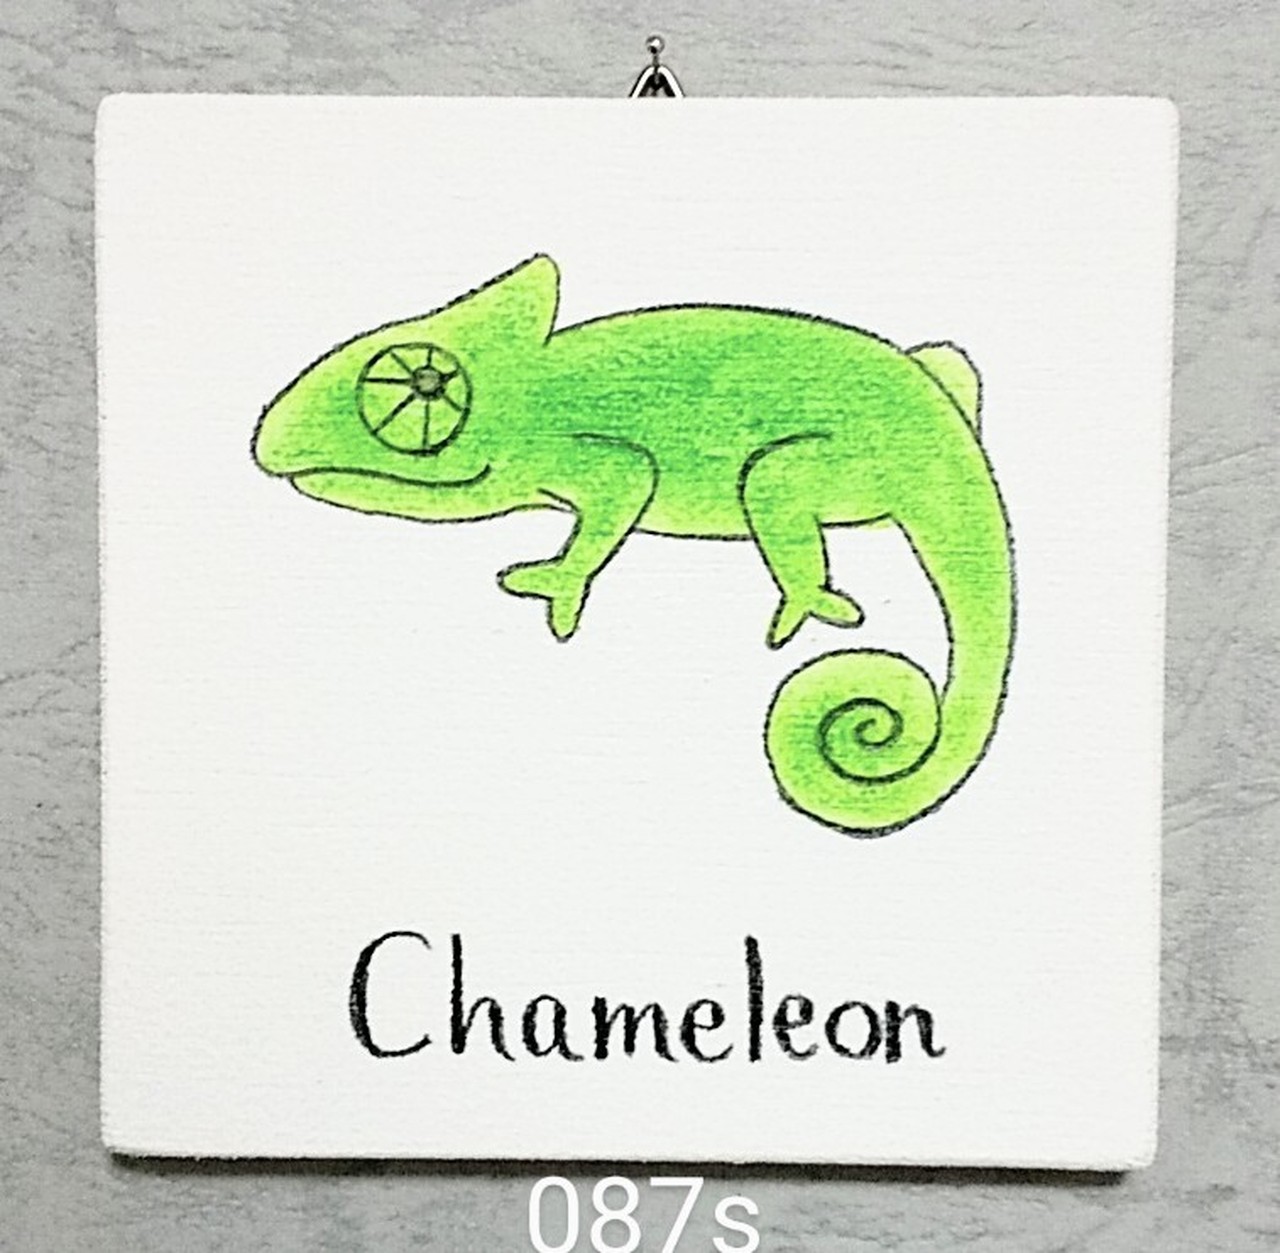 087s カメレオン Chameleon 英語 単語 教育 インテリア 子供 学校 保育園 幼稚園 癒やし 動物 自然 ほのぼの パネル 絵 原画 板絵 さっちん